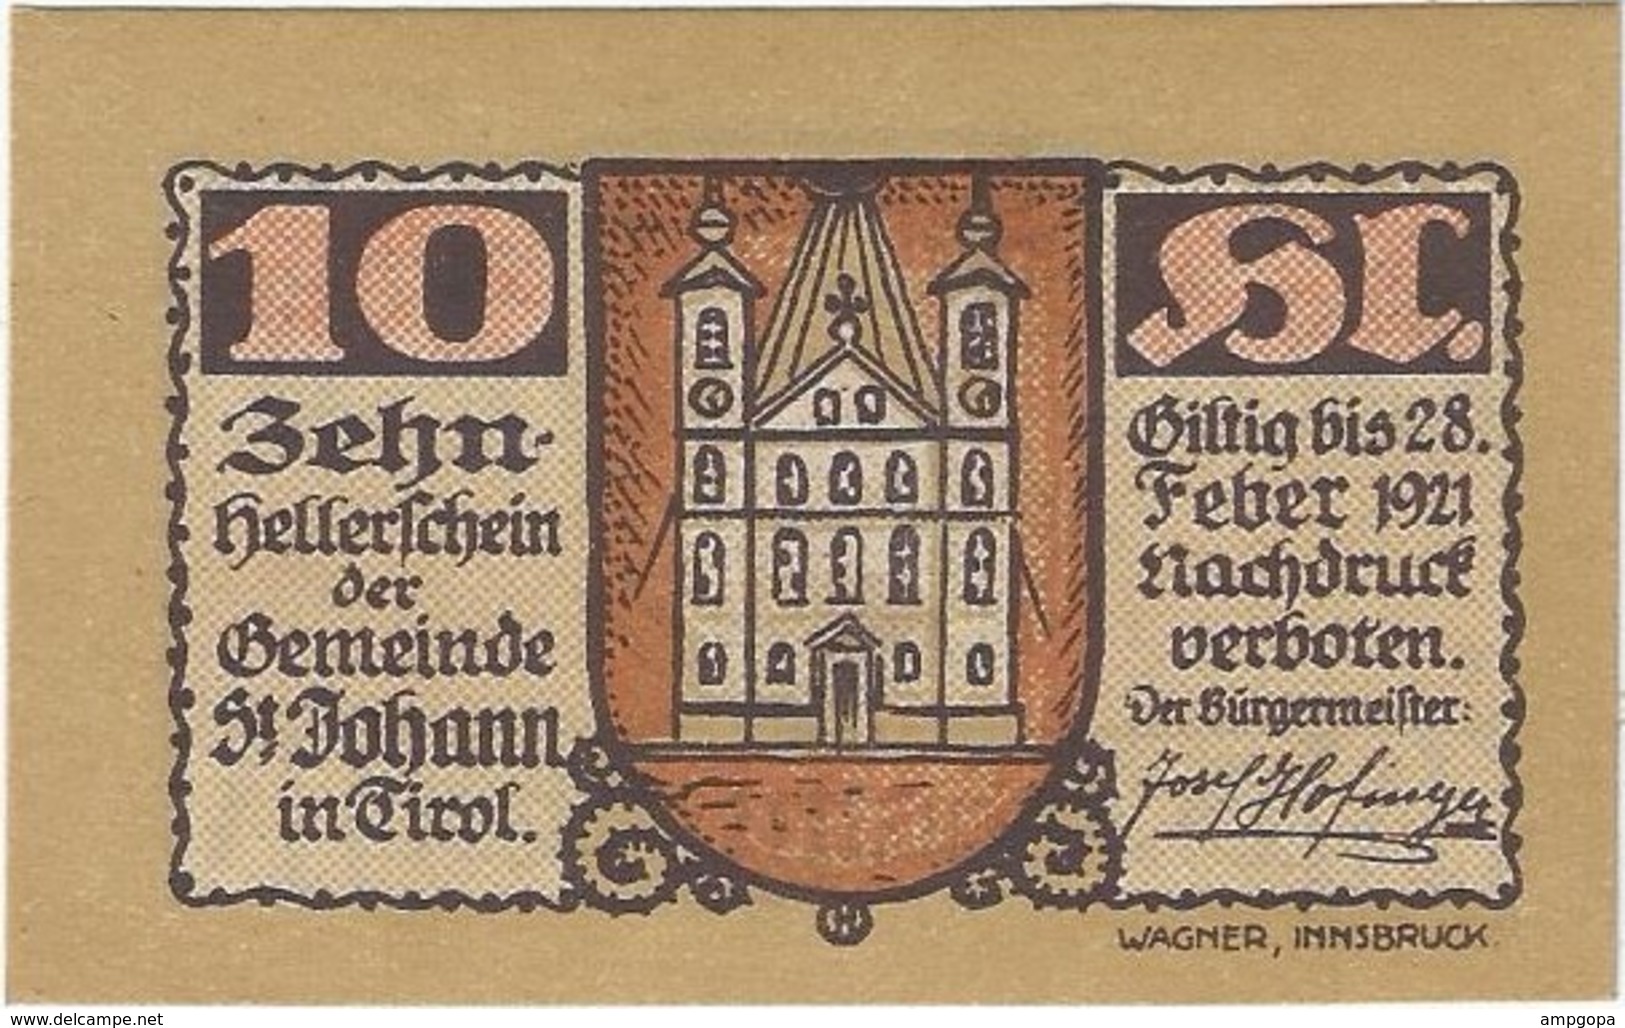 Austria 10 Heller 31-1-1921, St. Johann (Tirol) 898d UNC - Austria